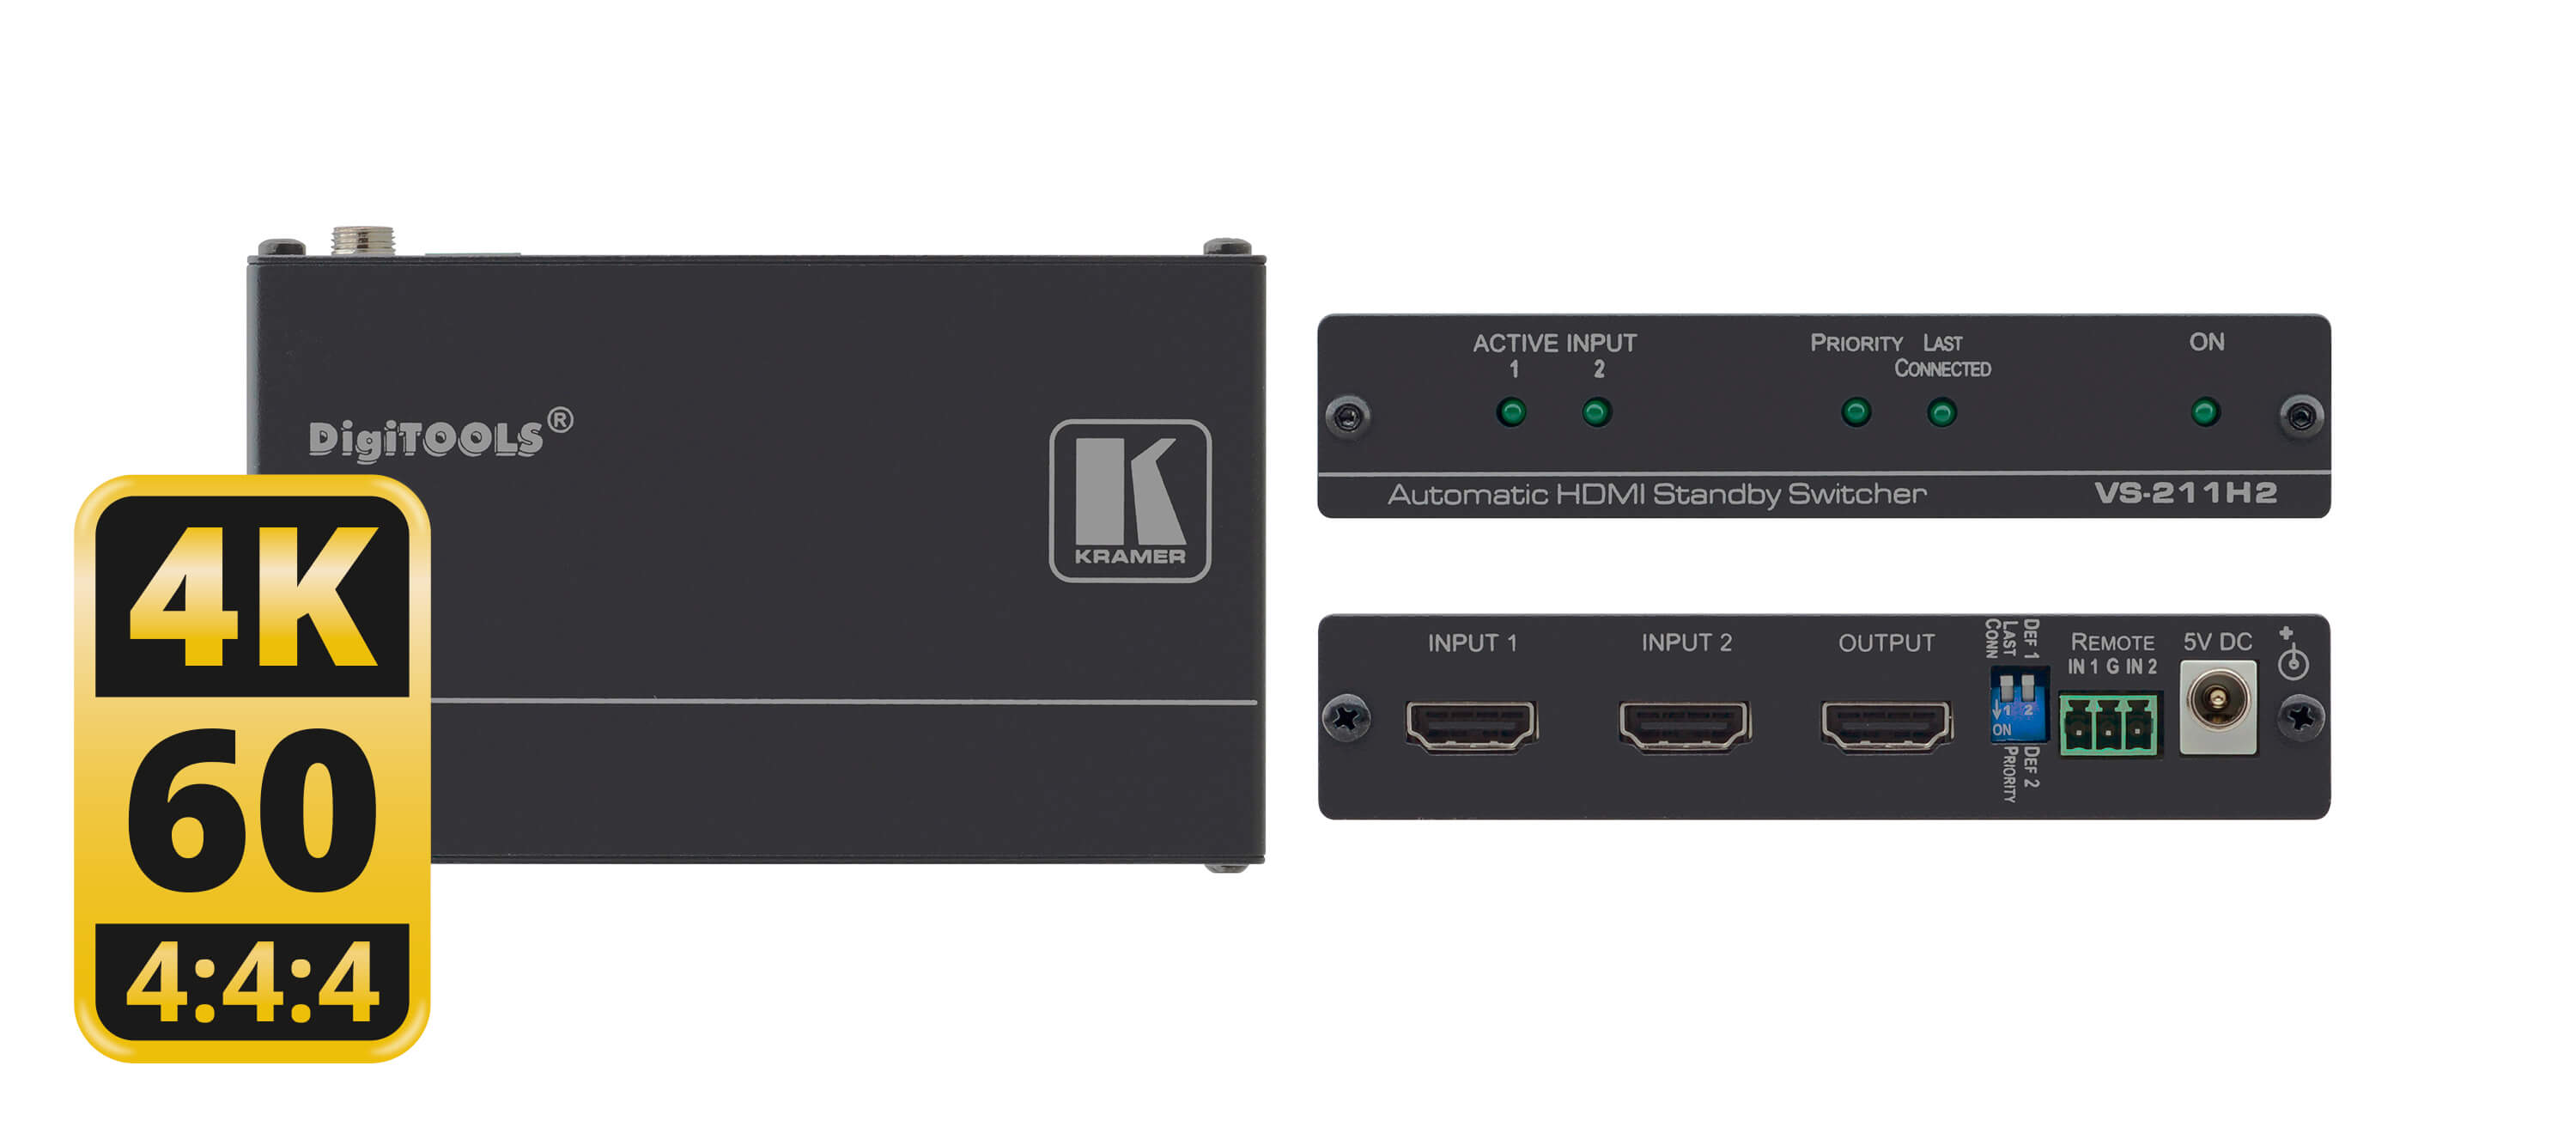 Kramer VS-211H2 Switcher Selector Automático de HDMI 2X1 4K Conmutación automática (última conexión/prioridad) HDR y compatible con HDCP 2.2